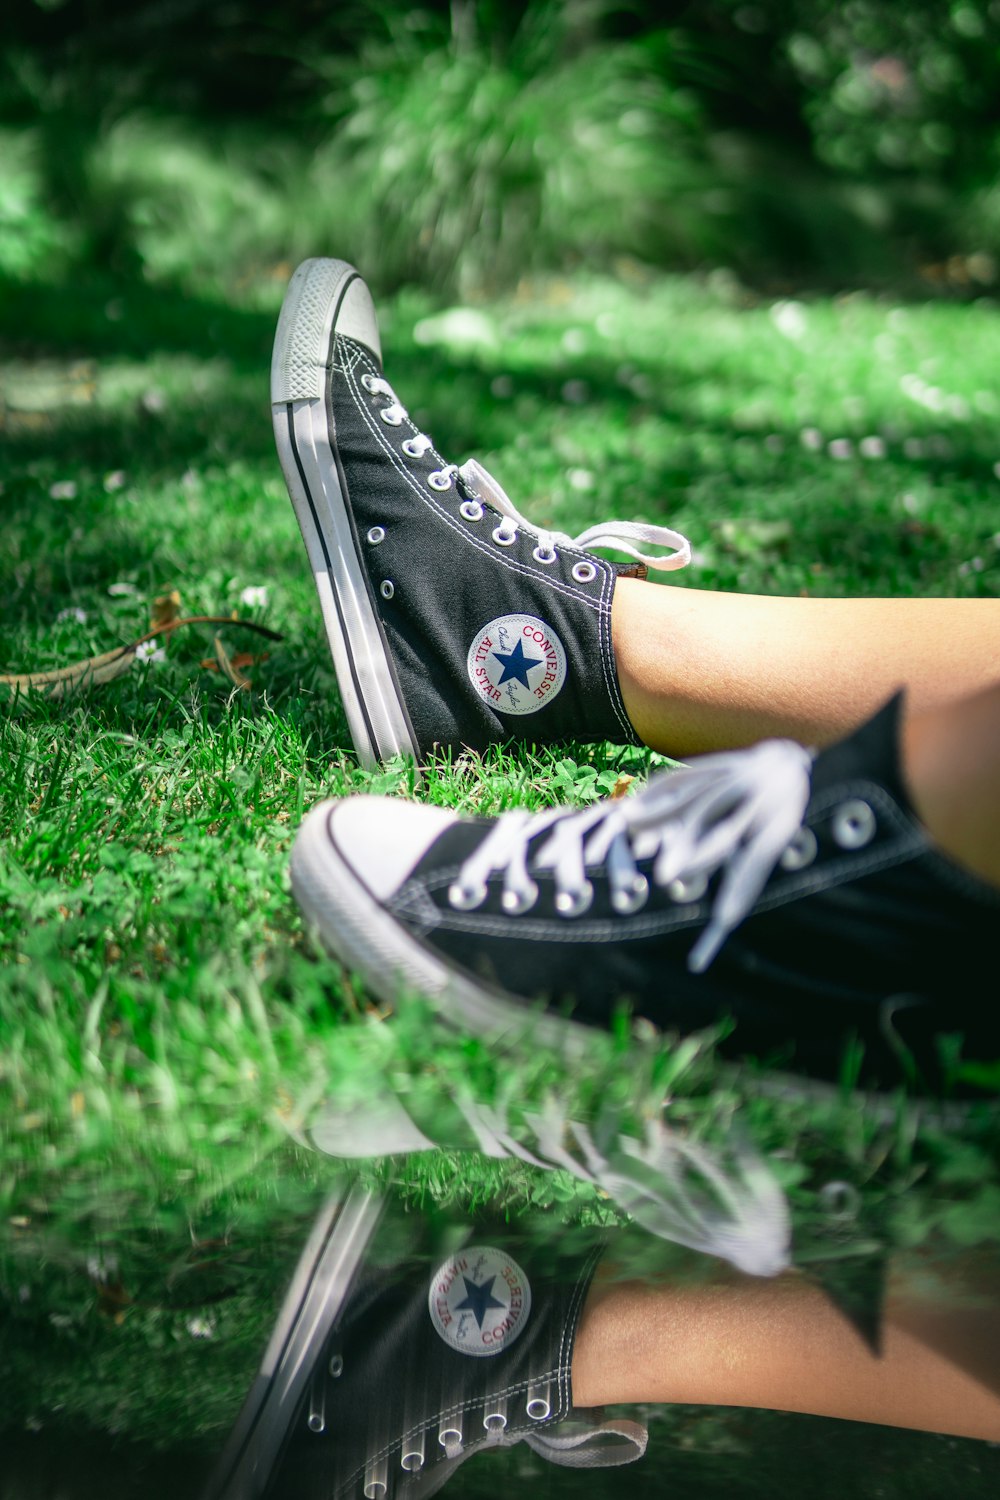 Foto par de zapatillas altas Converse negras zelanda gratis en Unsplash